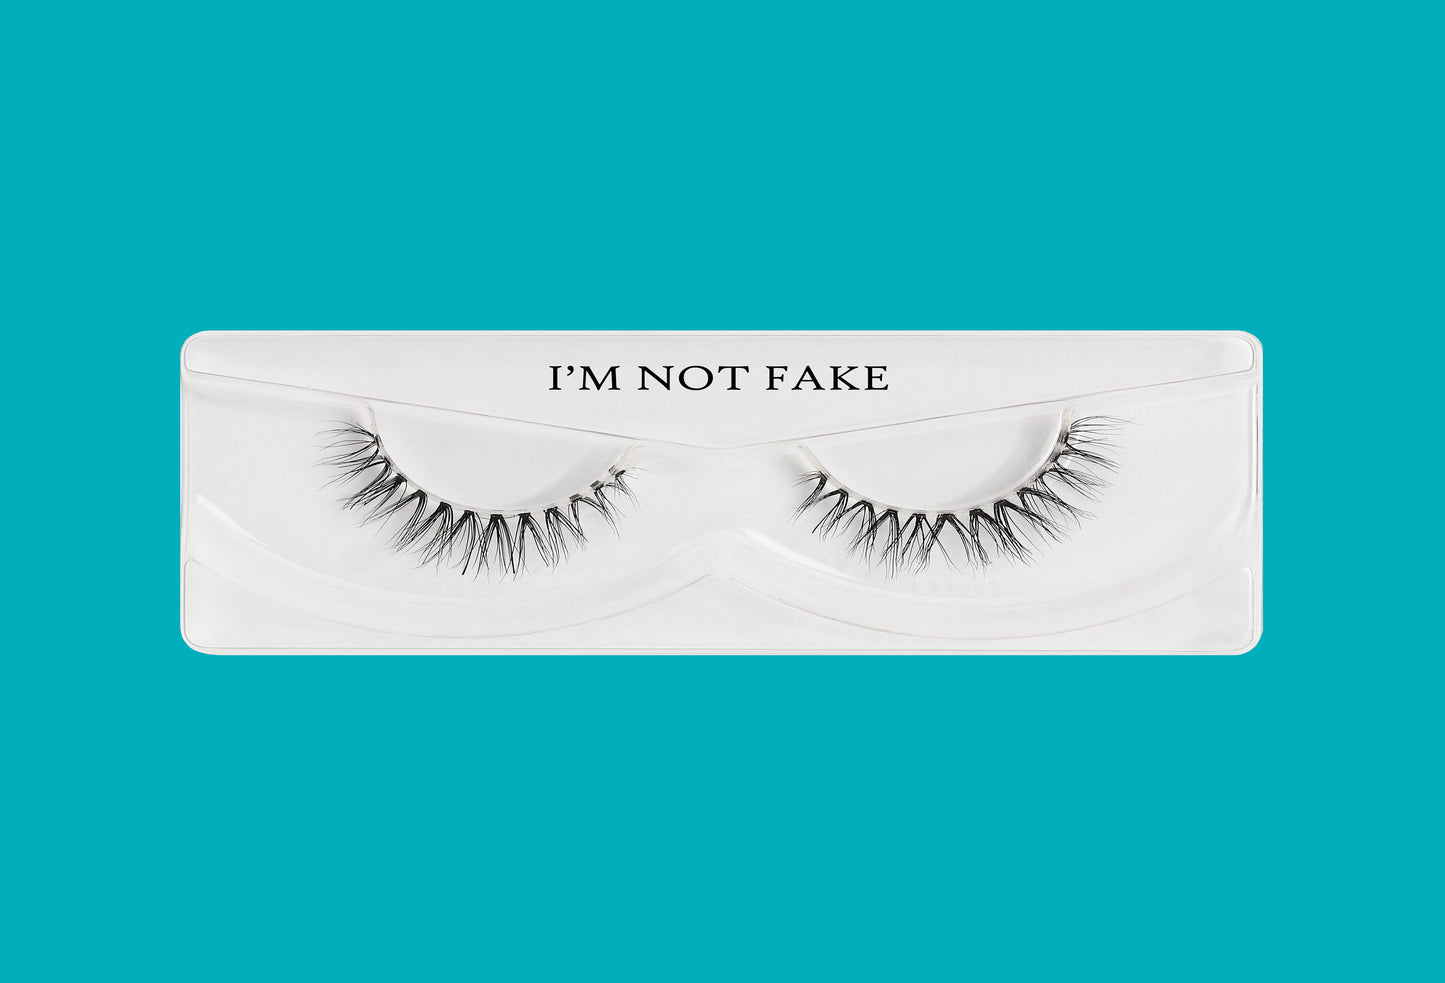 I'm not fake